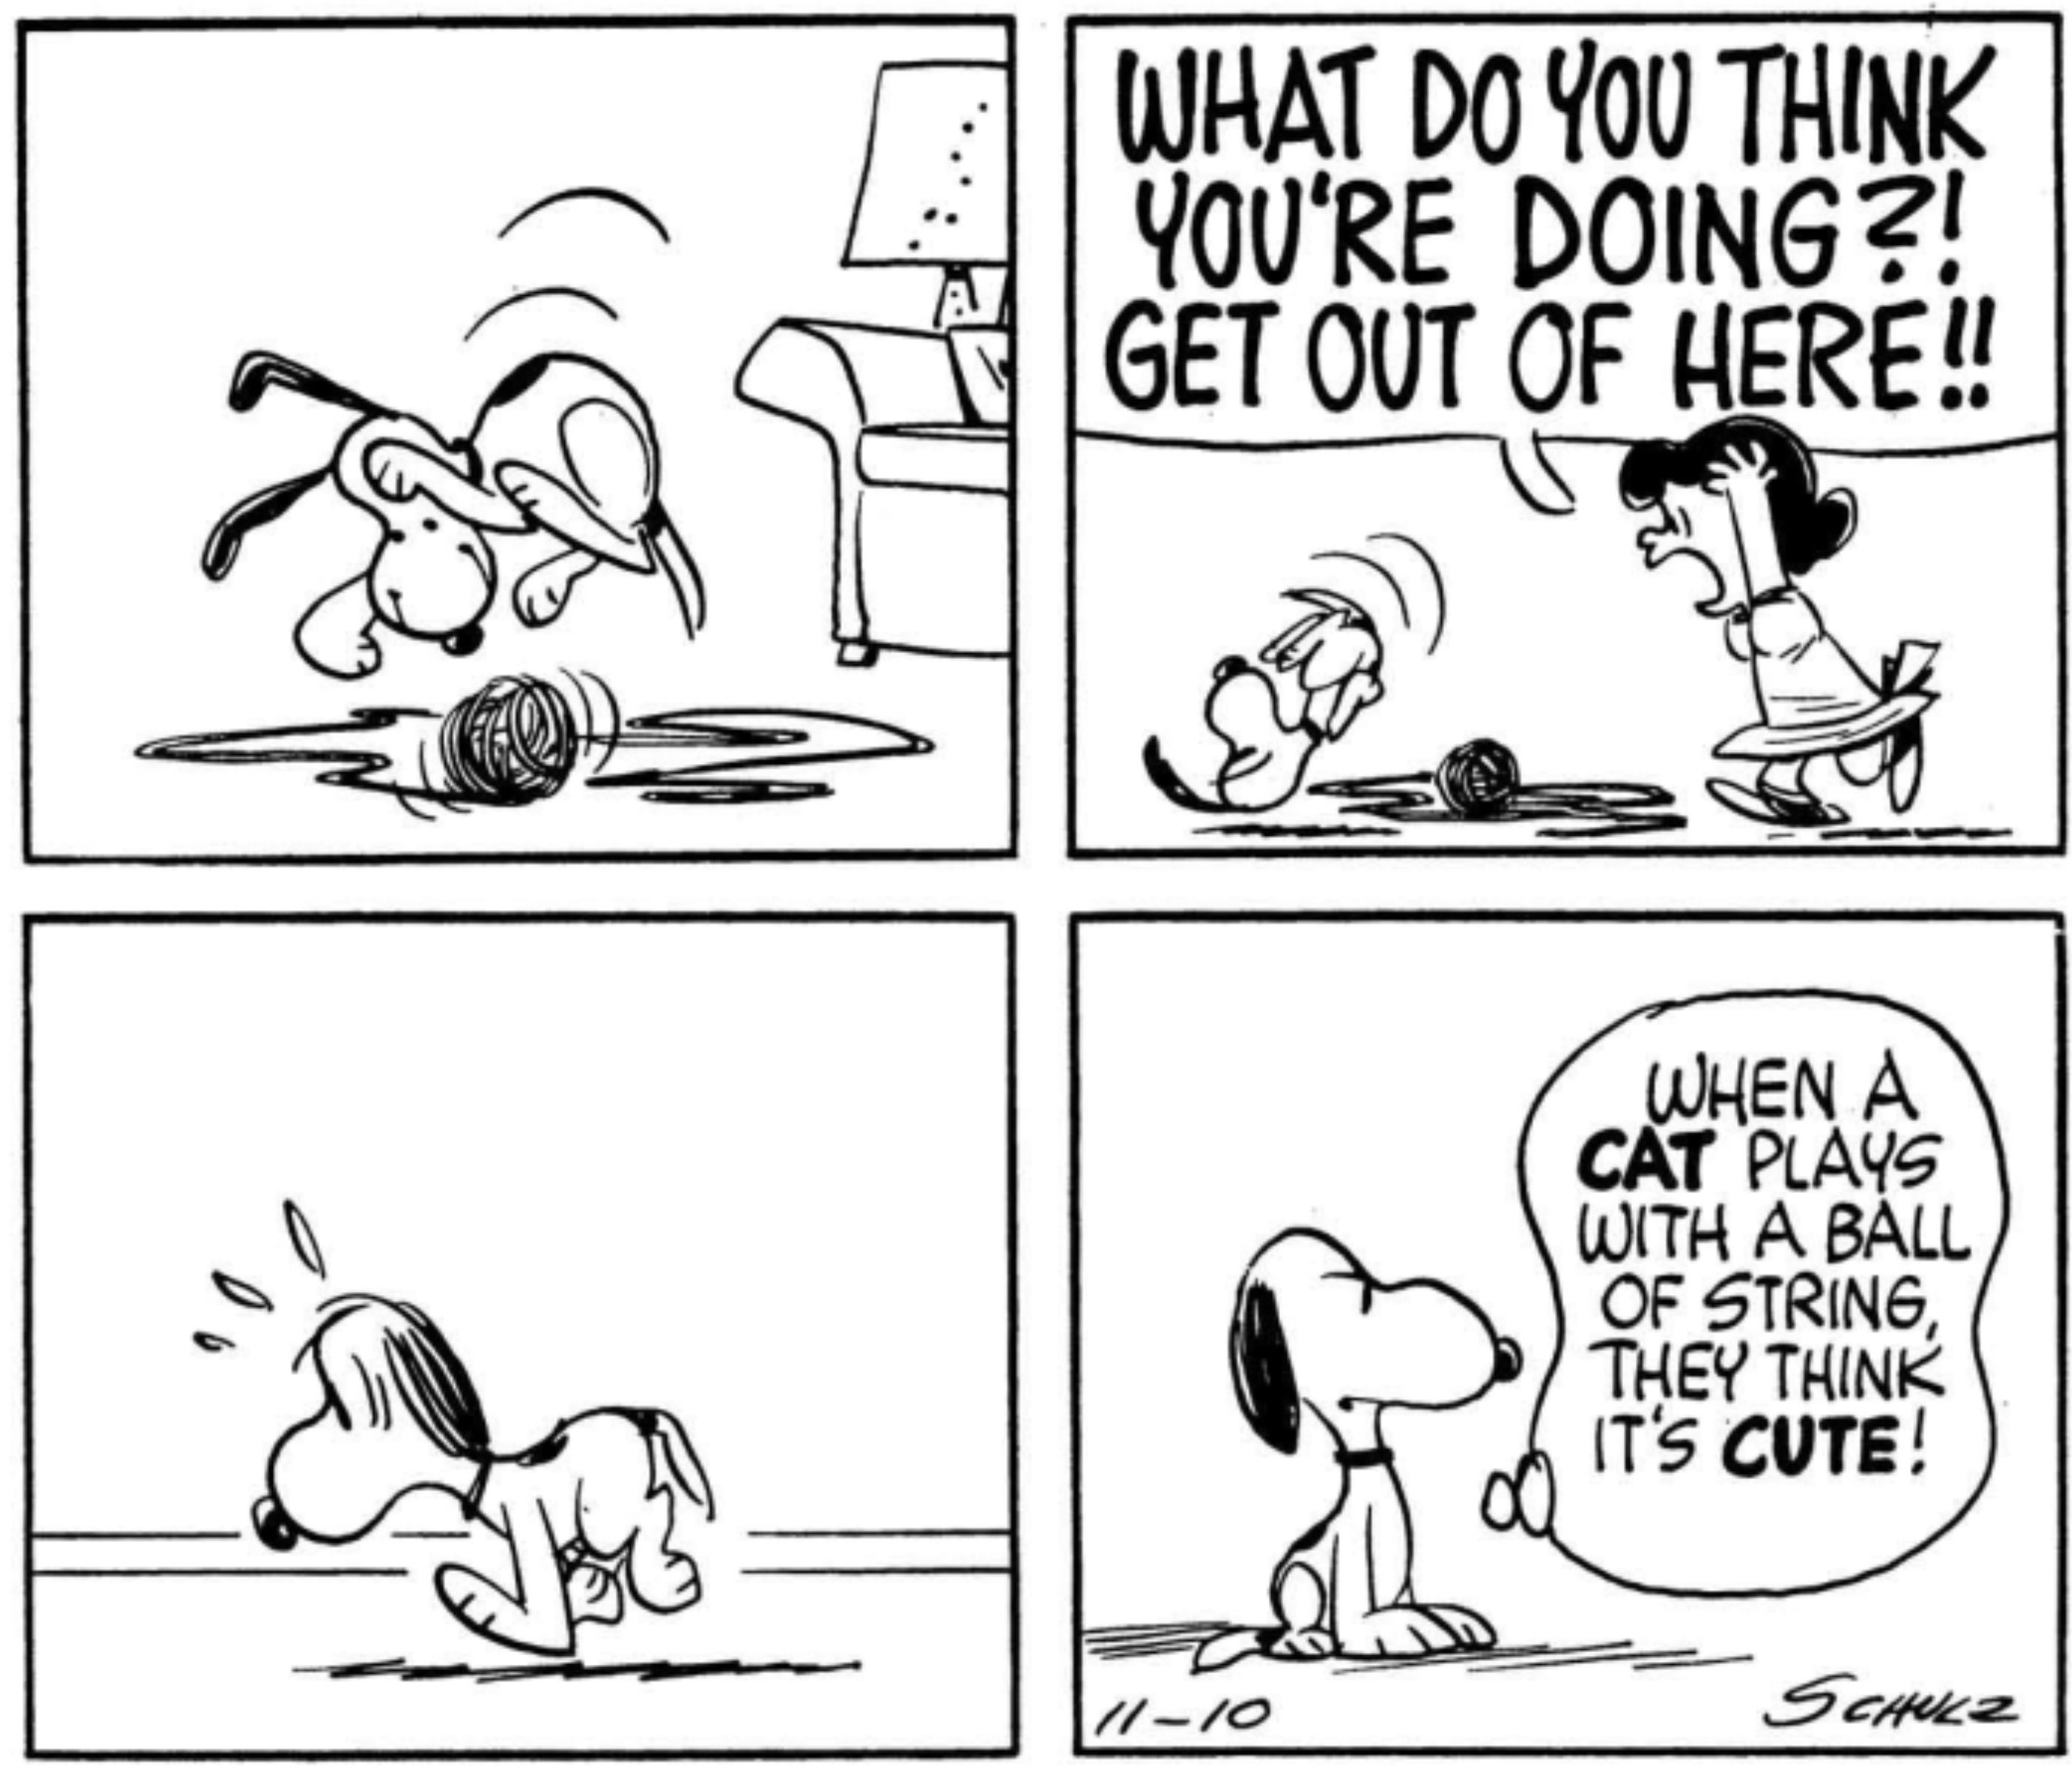 Snoopy brincando com lã e sendo gritado por Lucy.